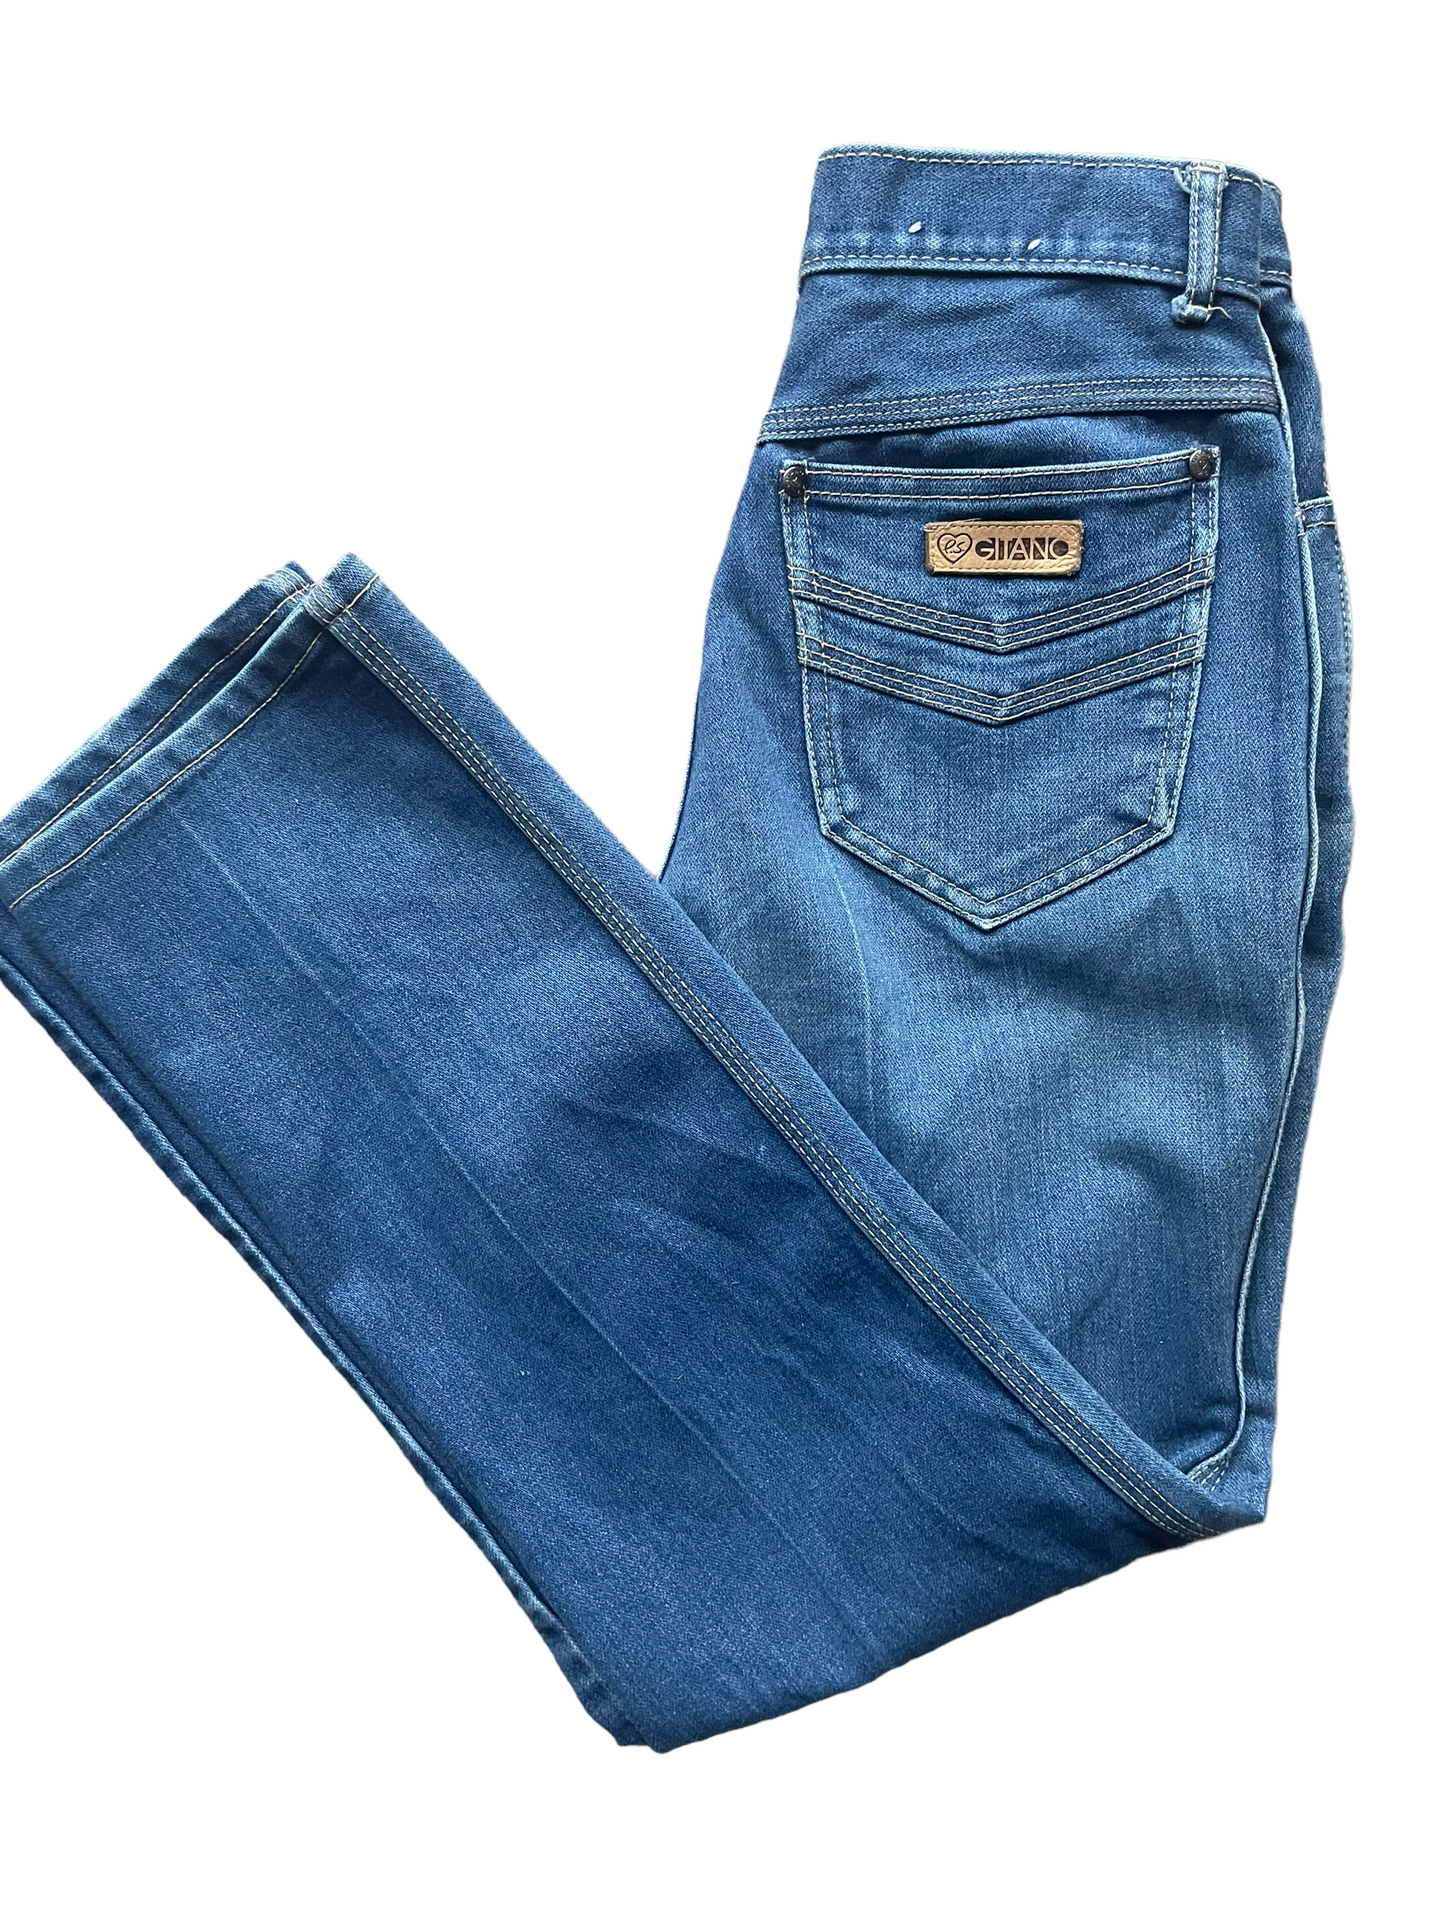 Folded view of Vintage 1980s Gitano Ladies Jeans | Barn Owl Seattle | Vintage Ladies Denim and Pants